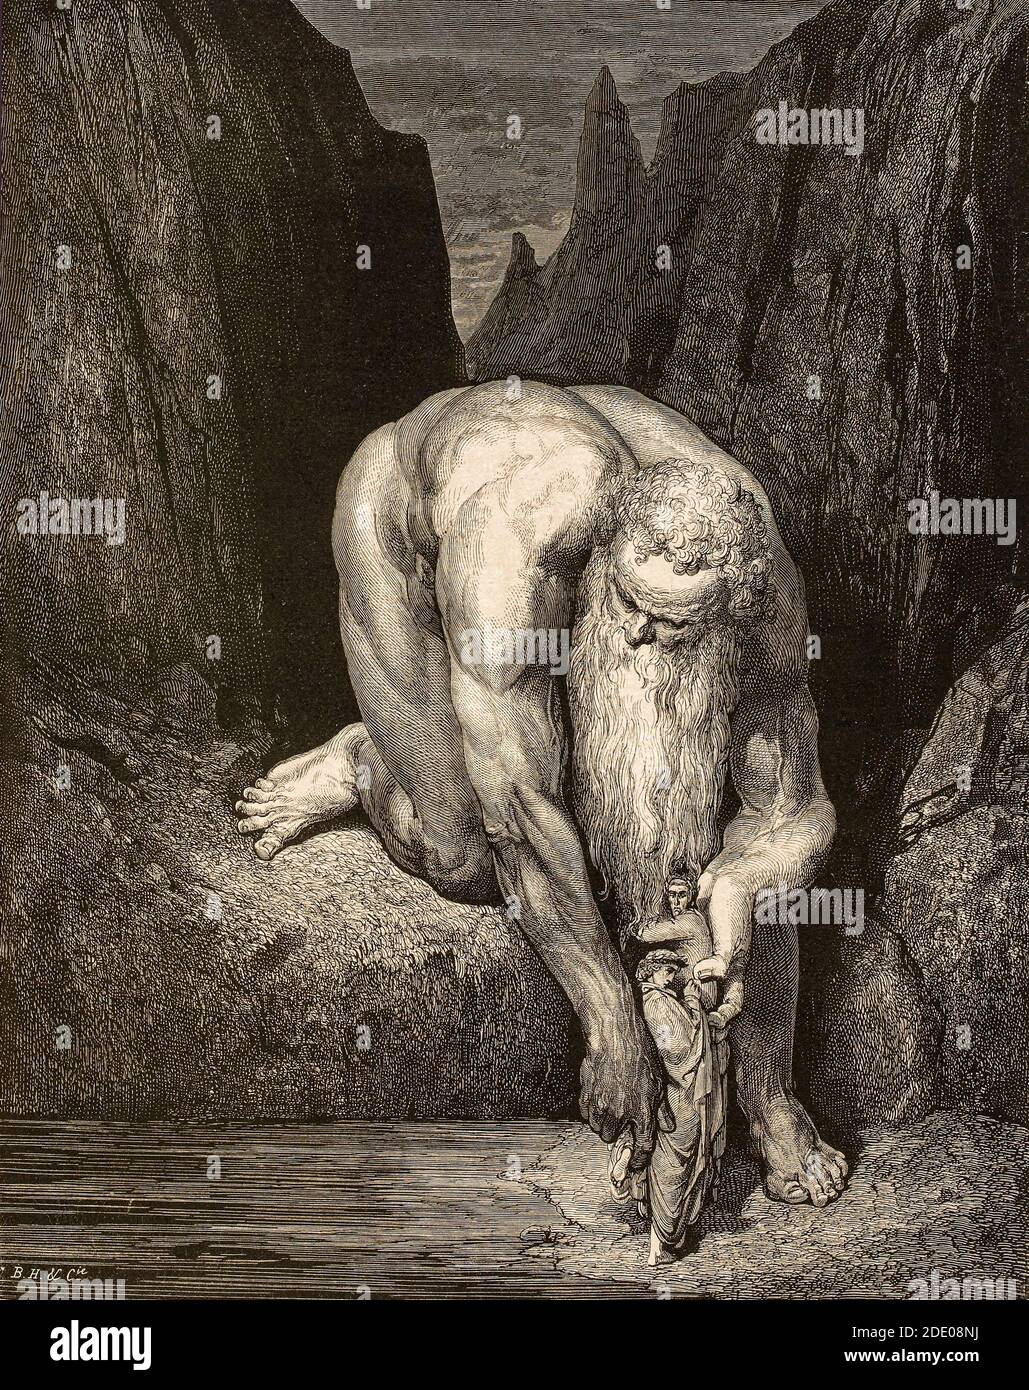 Dante Divina Commedia - Inferno - XXXI canto - Dante e Virgilio nel pozzo dei Giganti, puniti per opporsi a Dio - Anteo - IX cerchio - illustrazione di Gustave Dorè Foto Stock